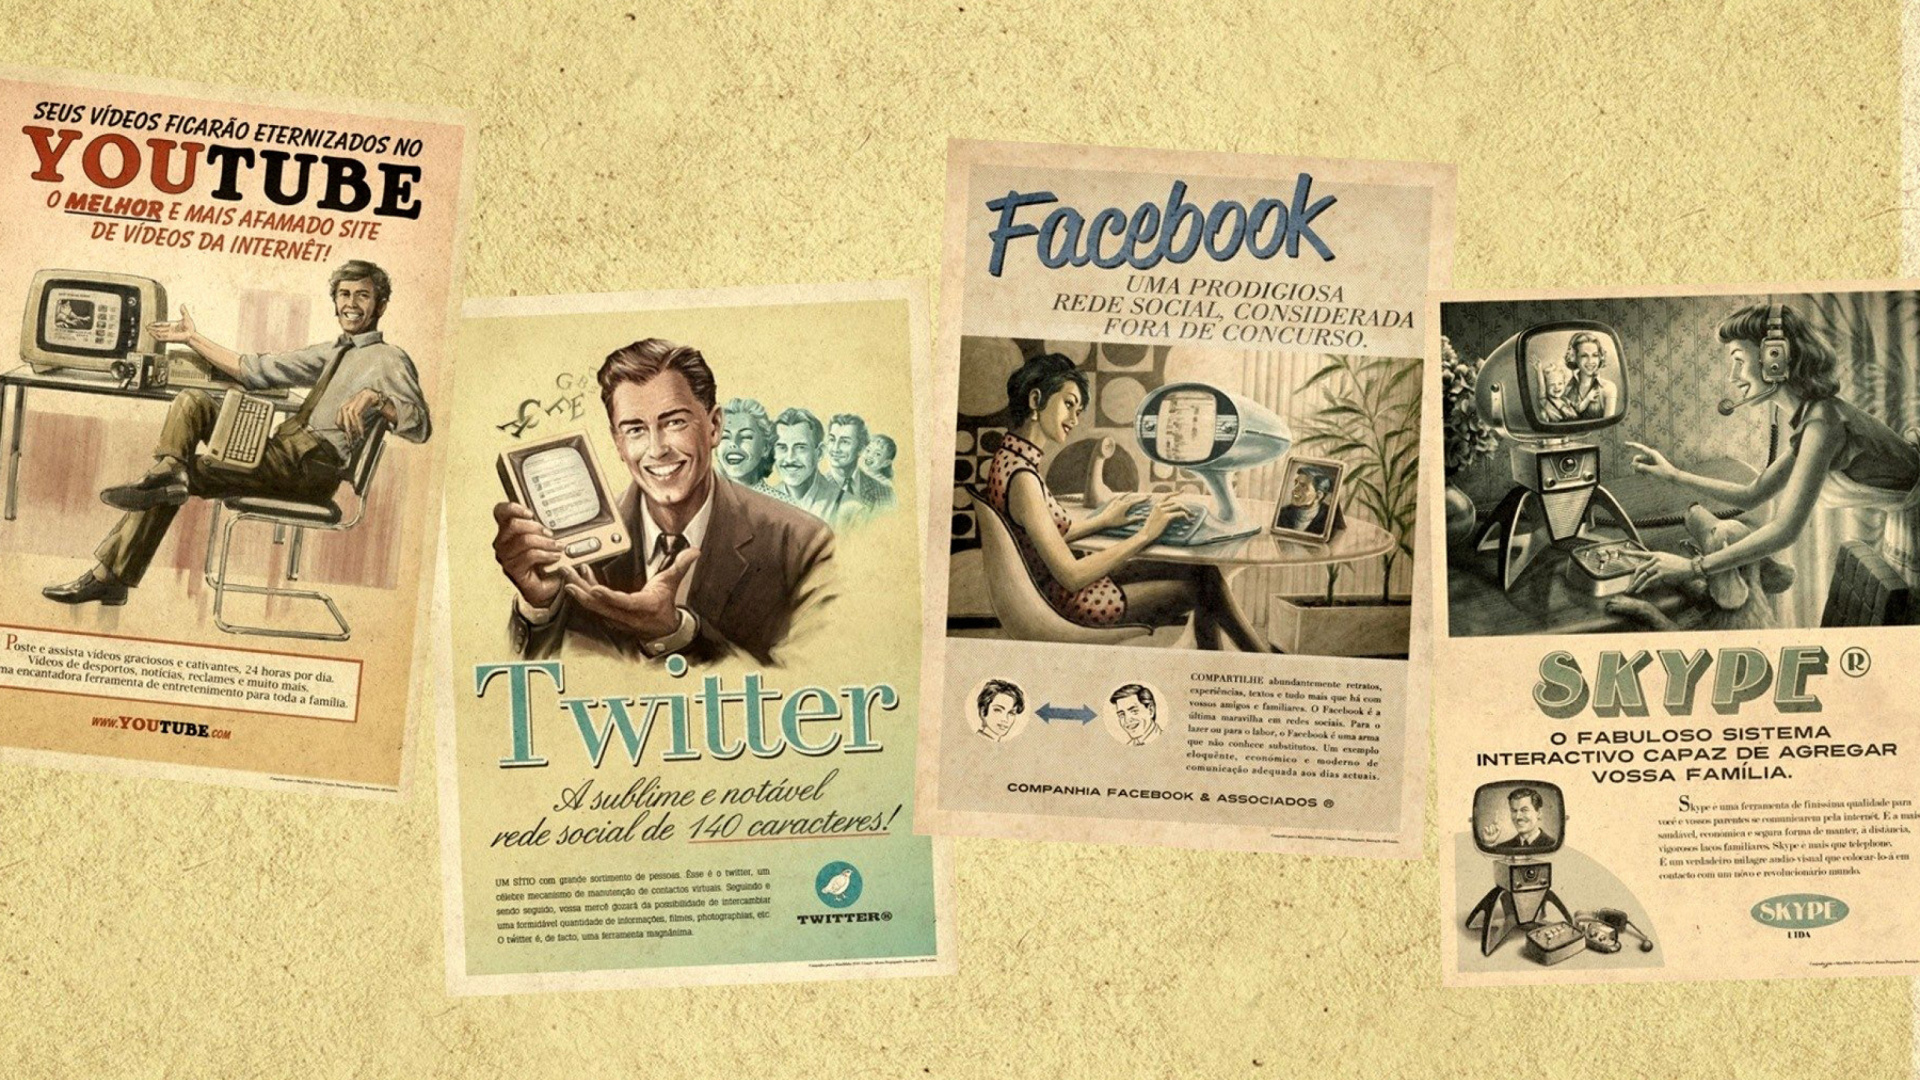 Social Networks Advertising: Skype, Twitter, Youtube wallpaper 1920x1080